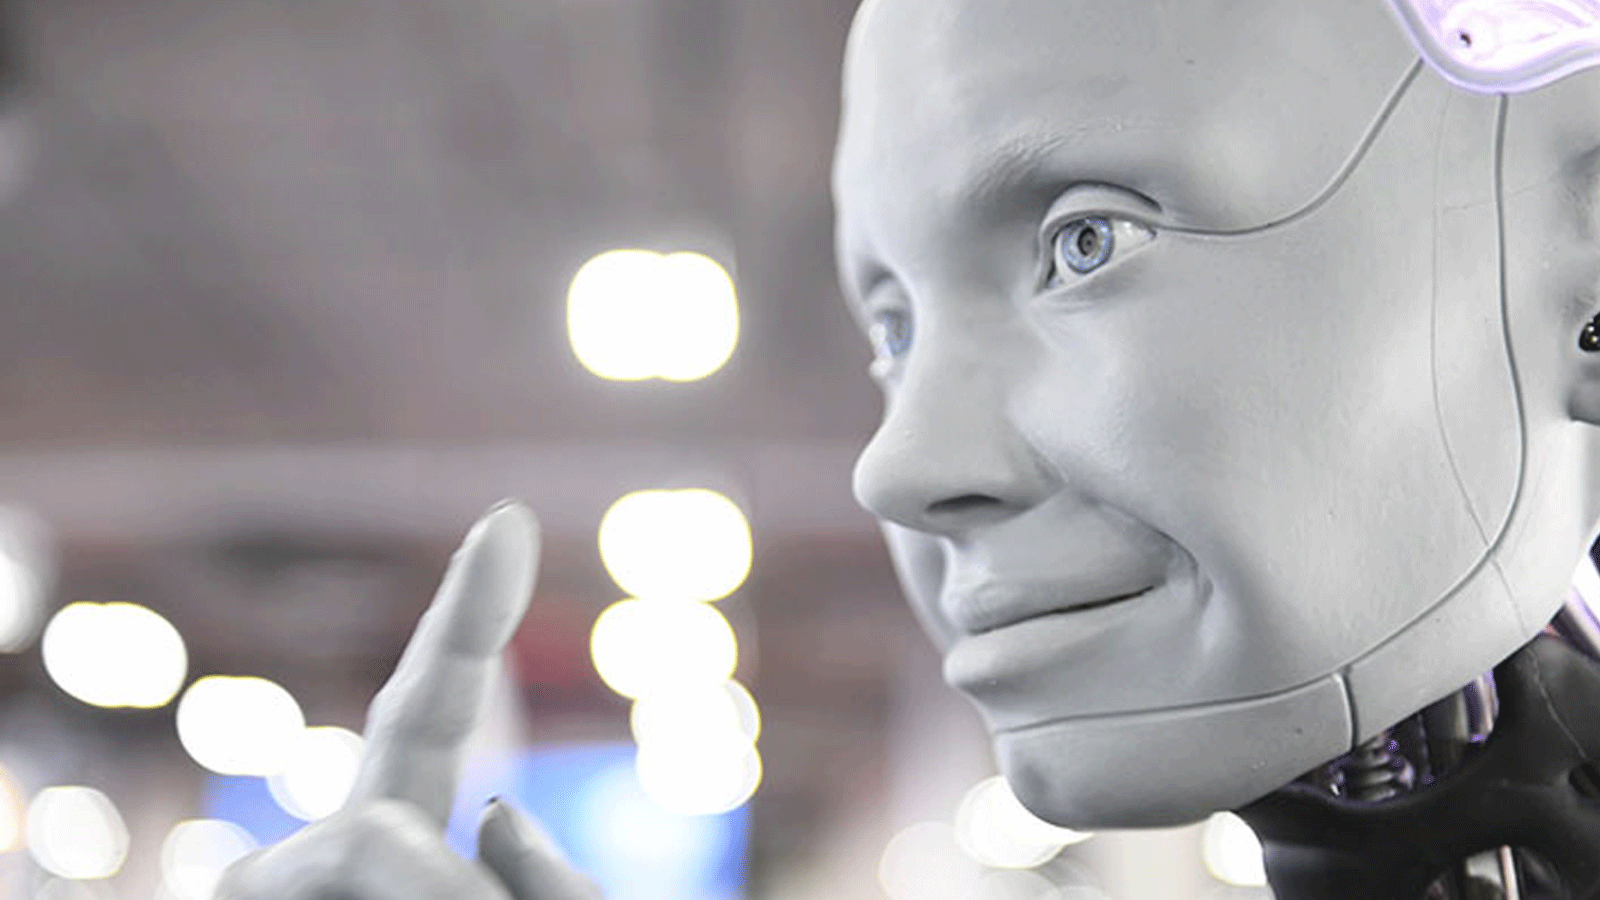 هذا الروبوت Ameca ذو الشكل البشري الهندسي مع الذكاء الاصطناعي عُرِضَ خلال معرض الإلكترونيات الاستهلاكية (CES) في 5 كانون الثاني\ يناير 2022 في لاس فيغاس، نيفادا